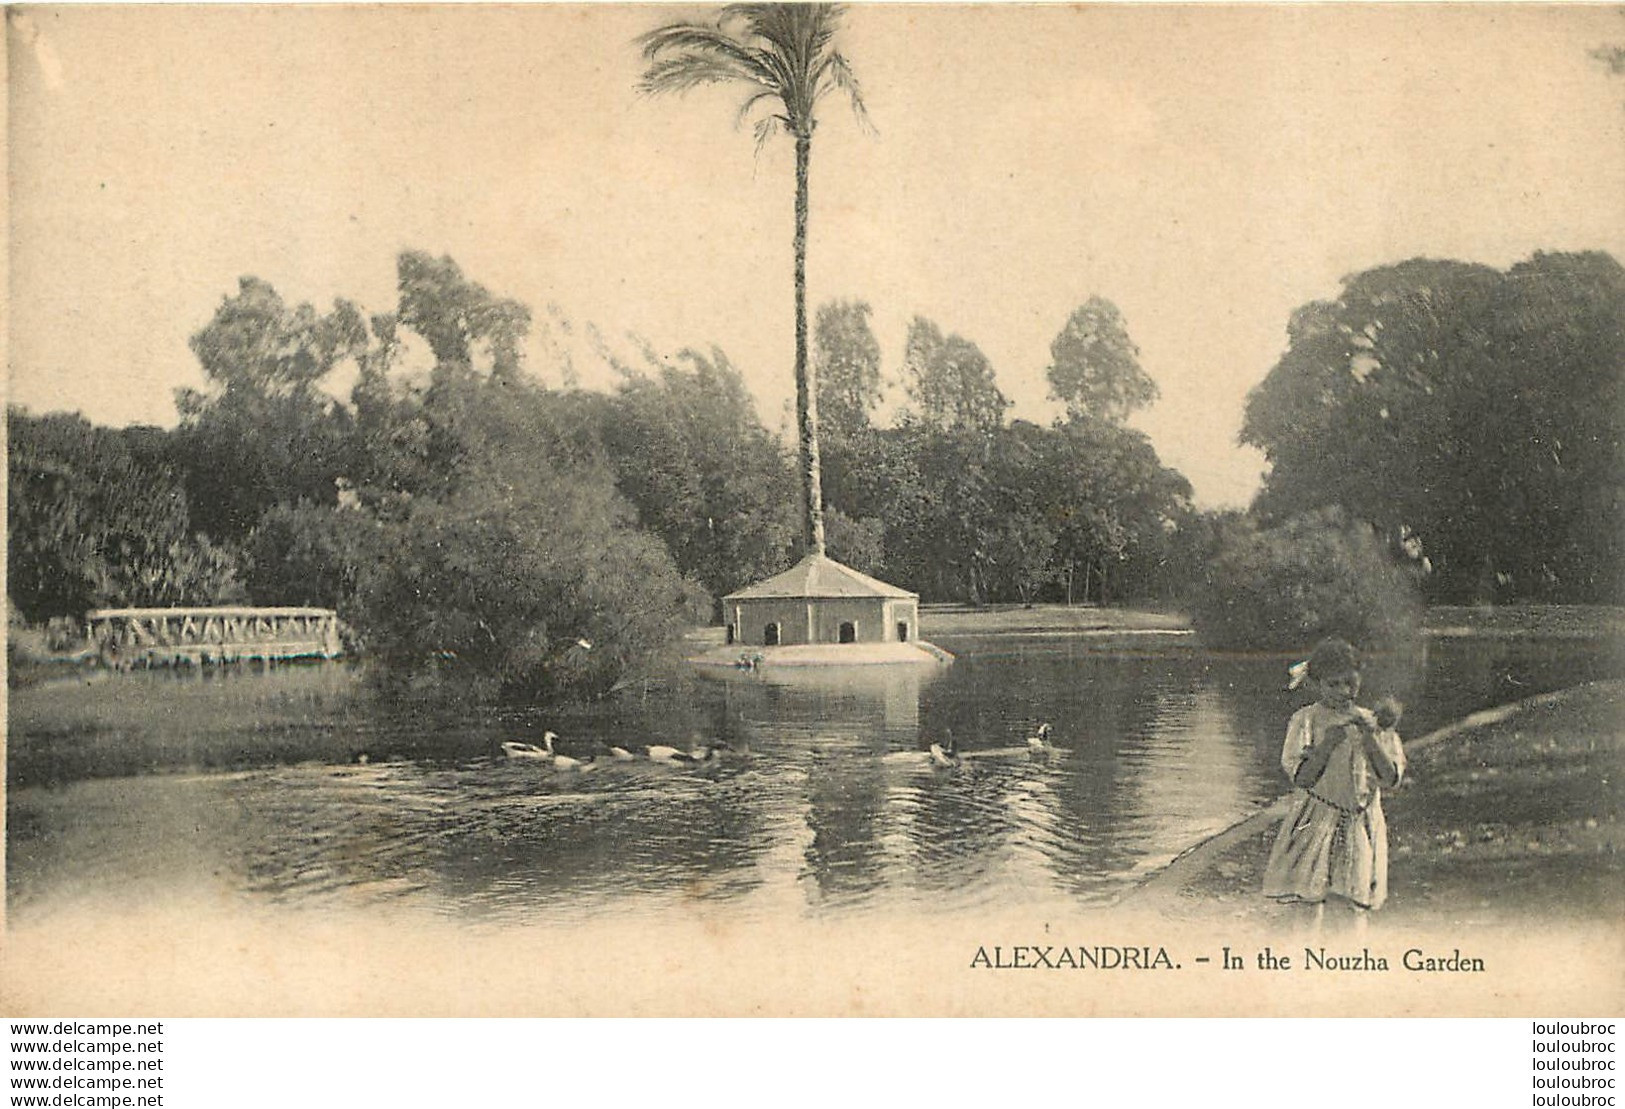 ALEXANDRIA IN THE NOUZHA GARDEN - Alexandria